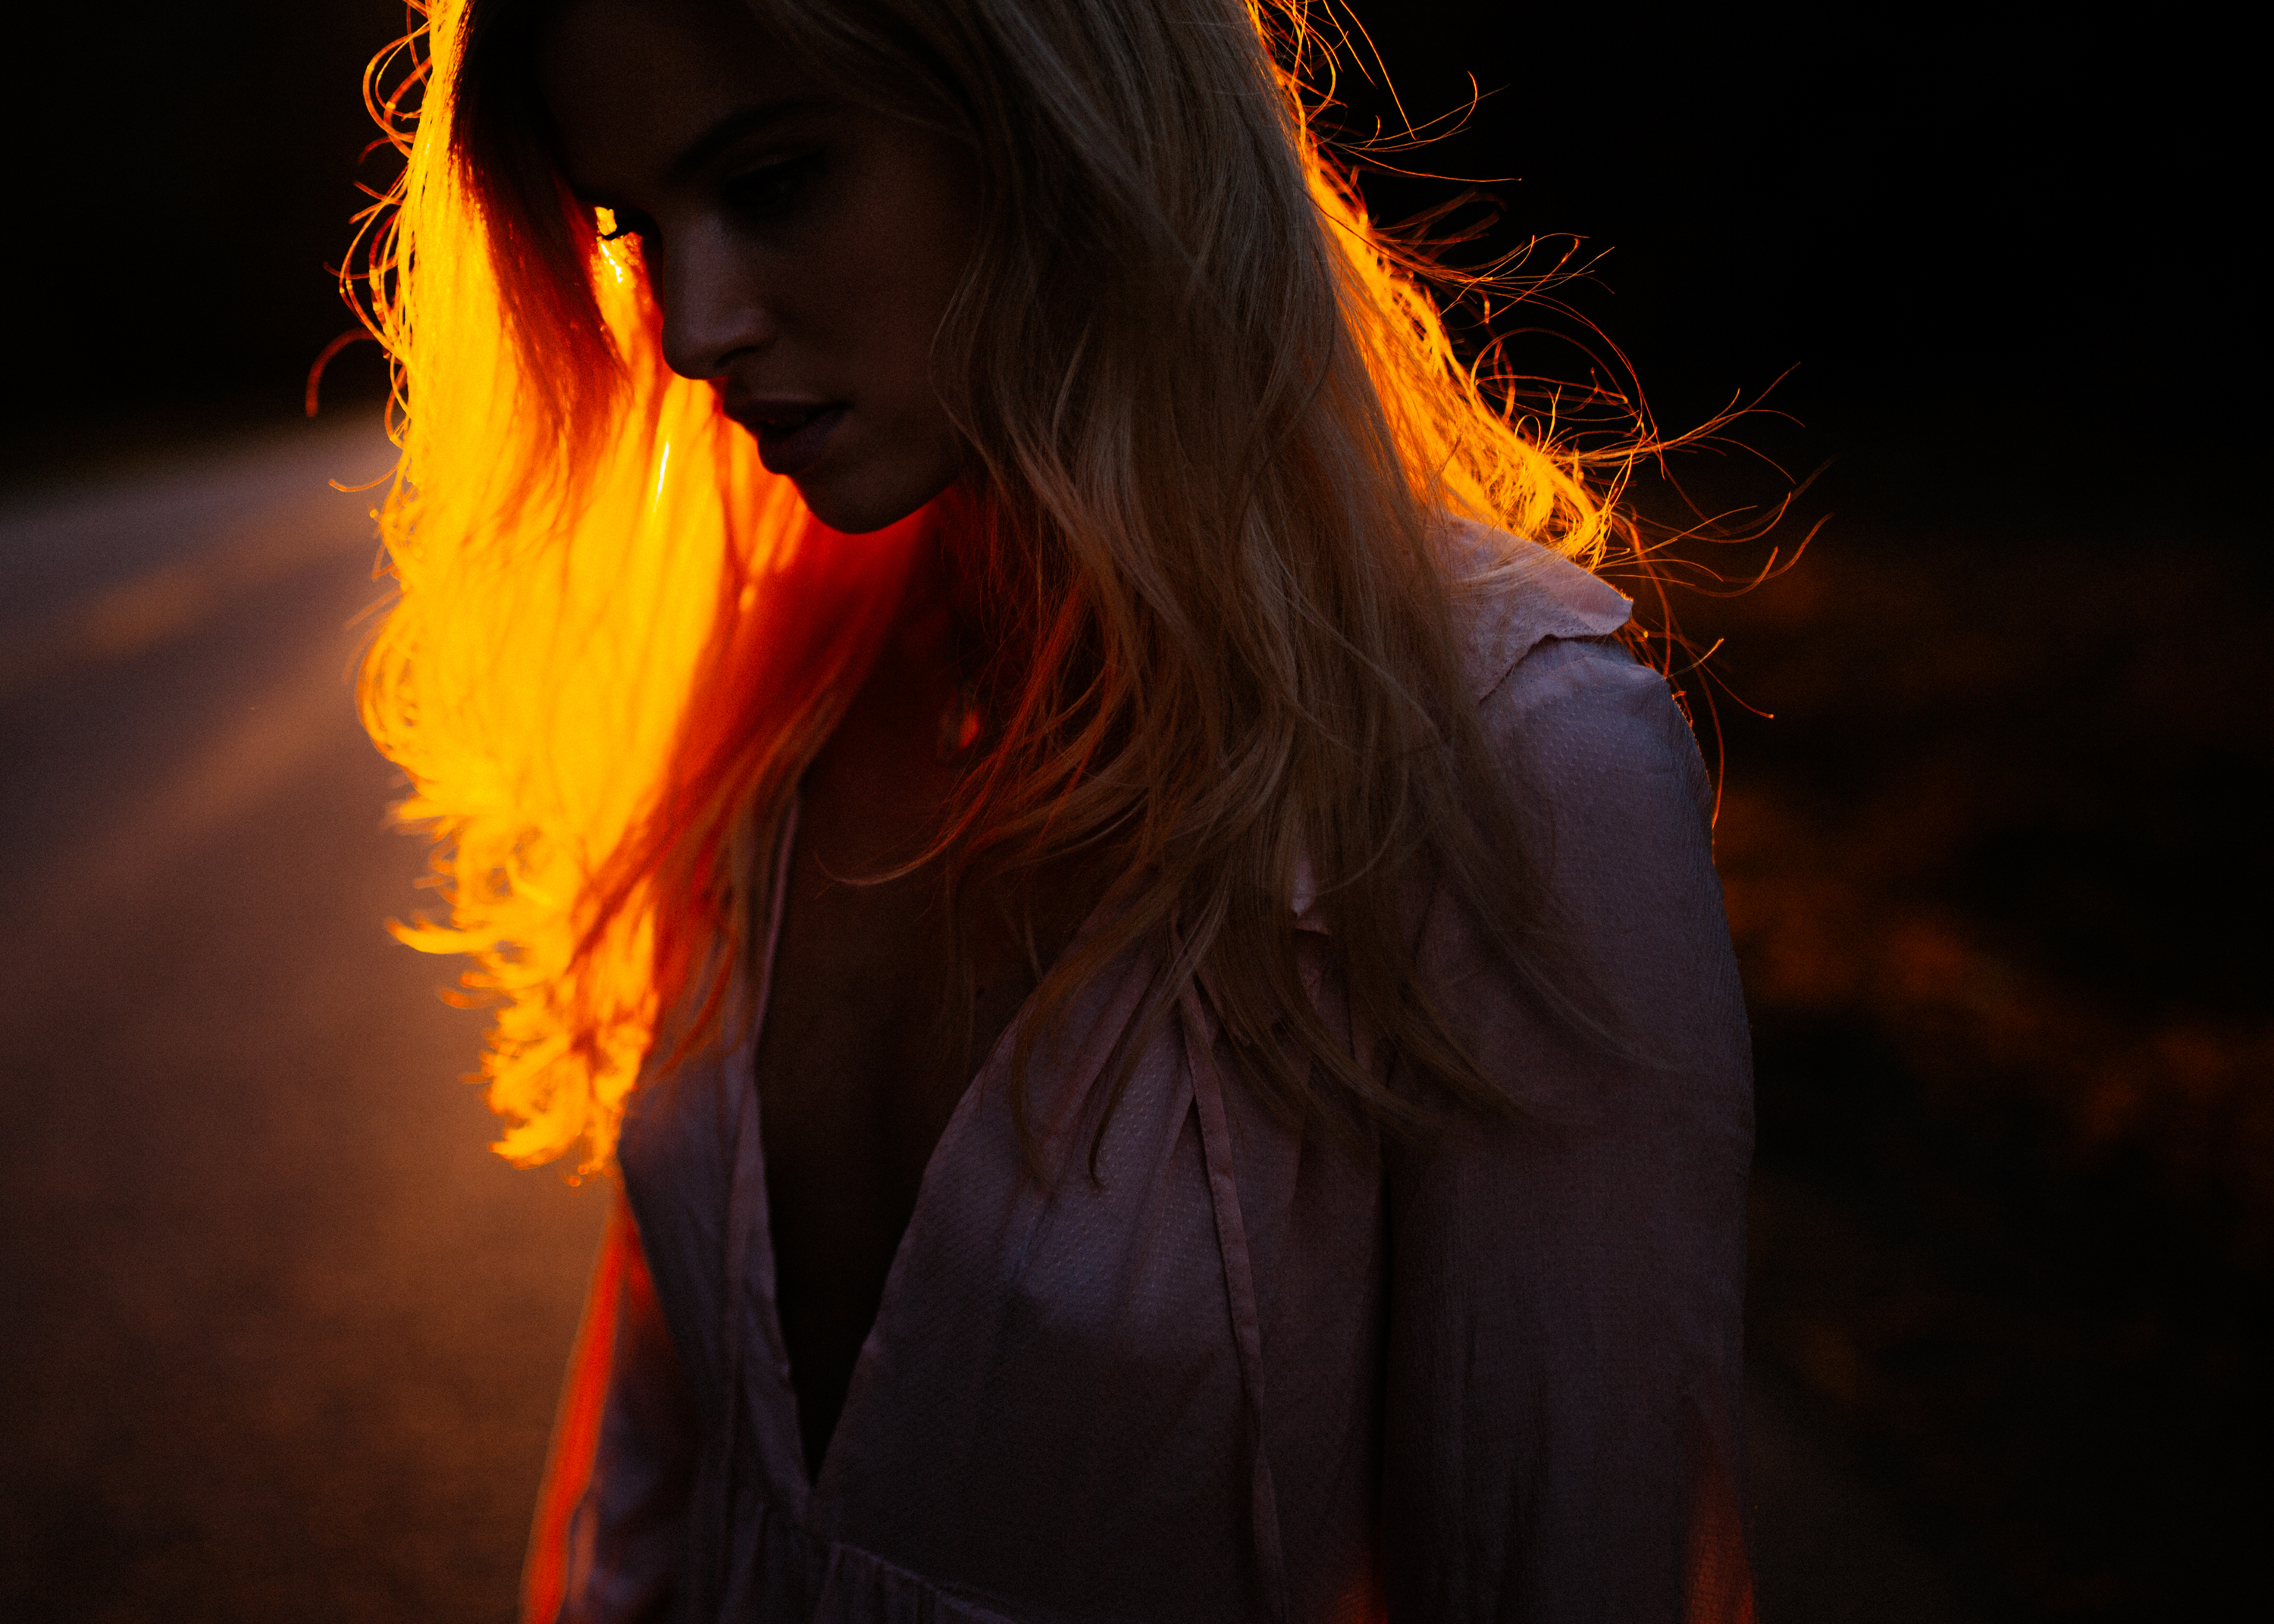 Night blonde. Девушка с огненными волосами. Девушка и огонь. Красивая девушка в огне. Девочка огонь.